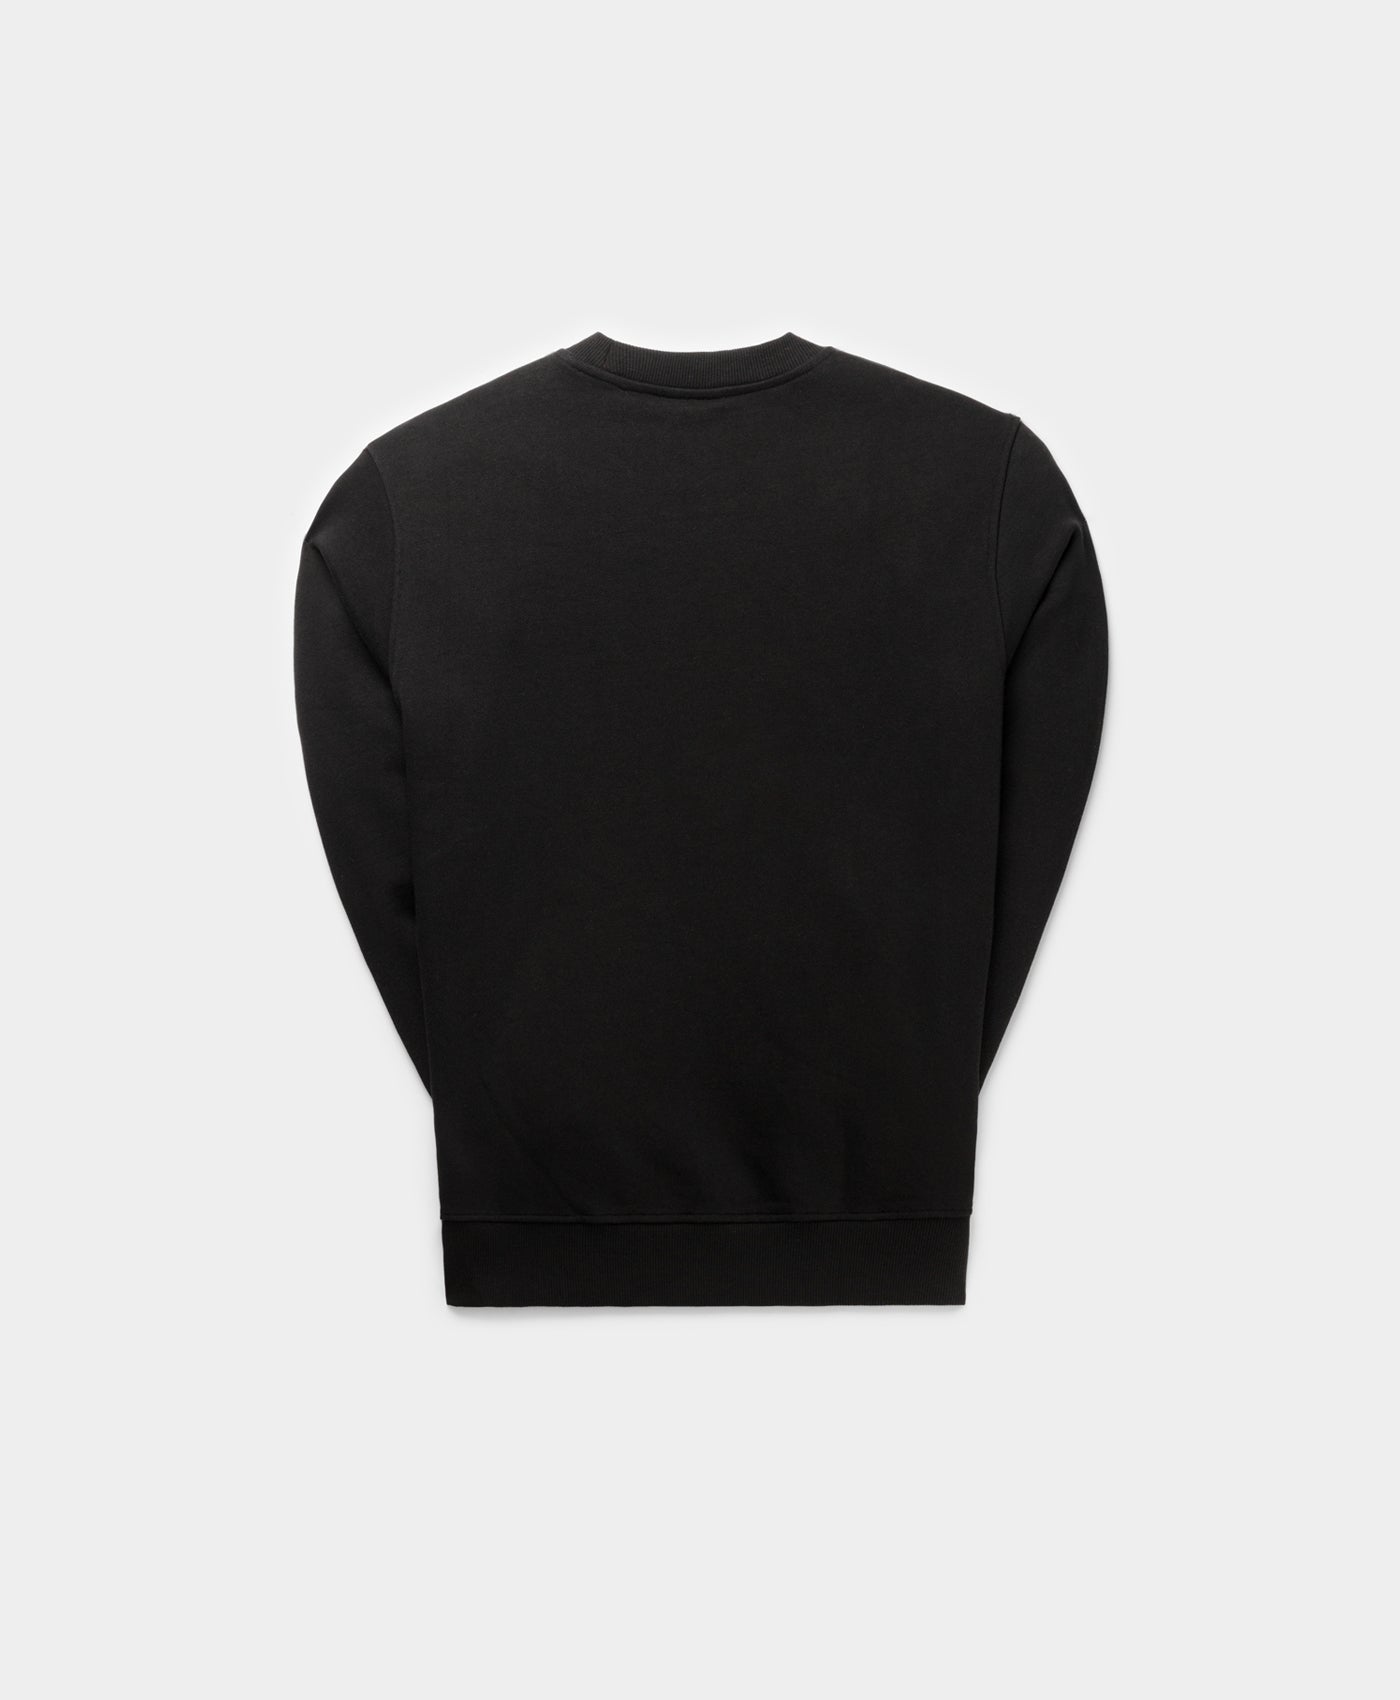 DP - Black Radama Sweater - Packshot - Rear